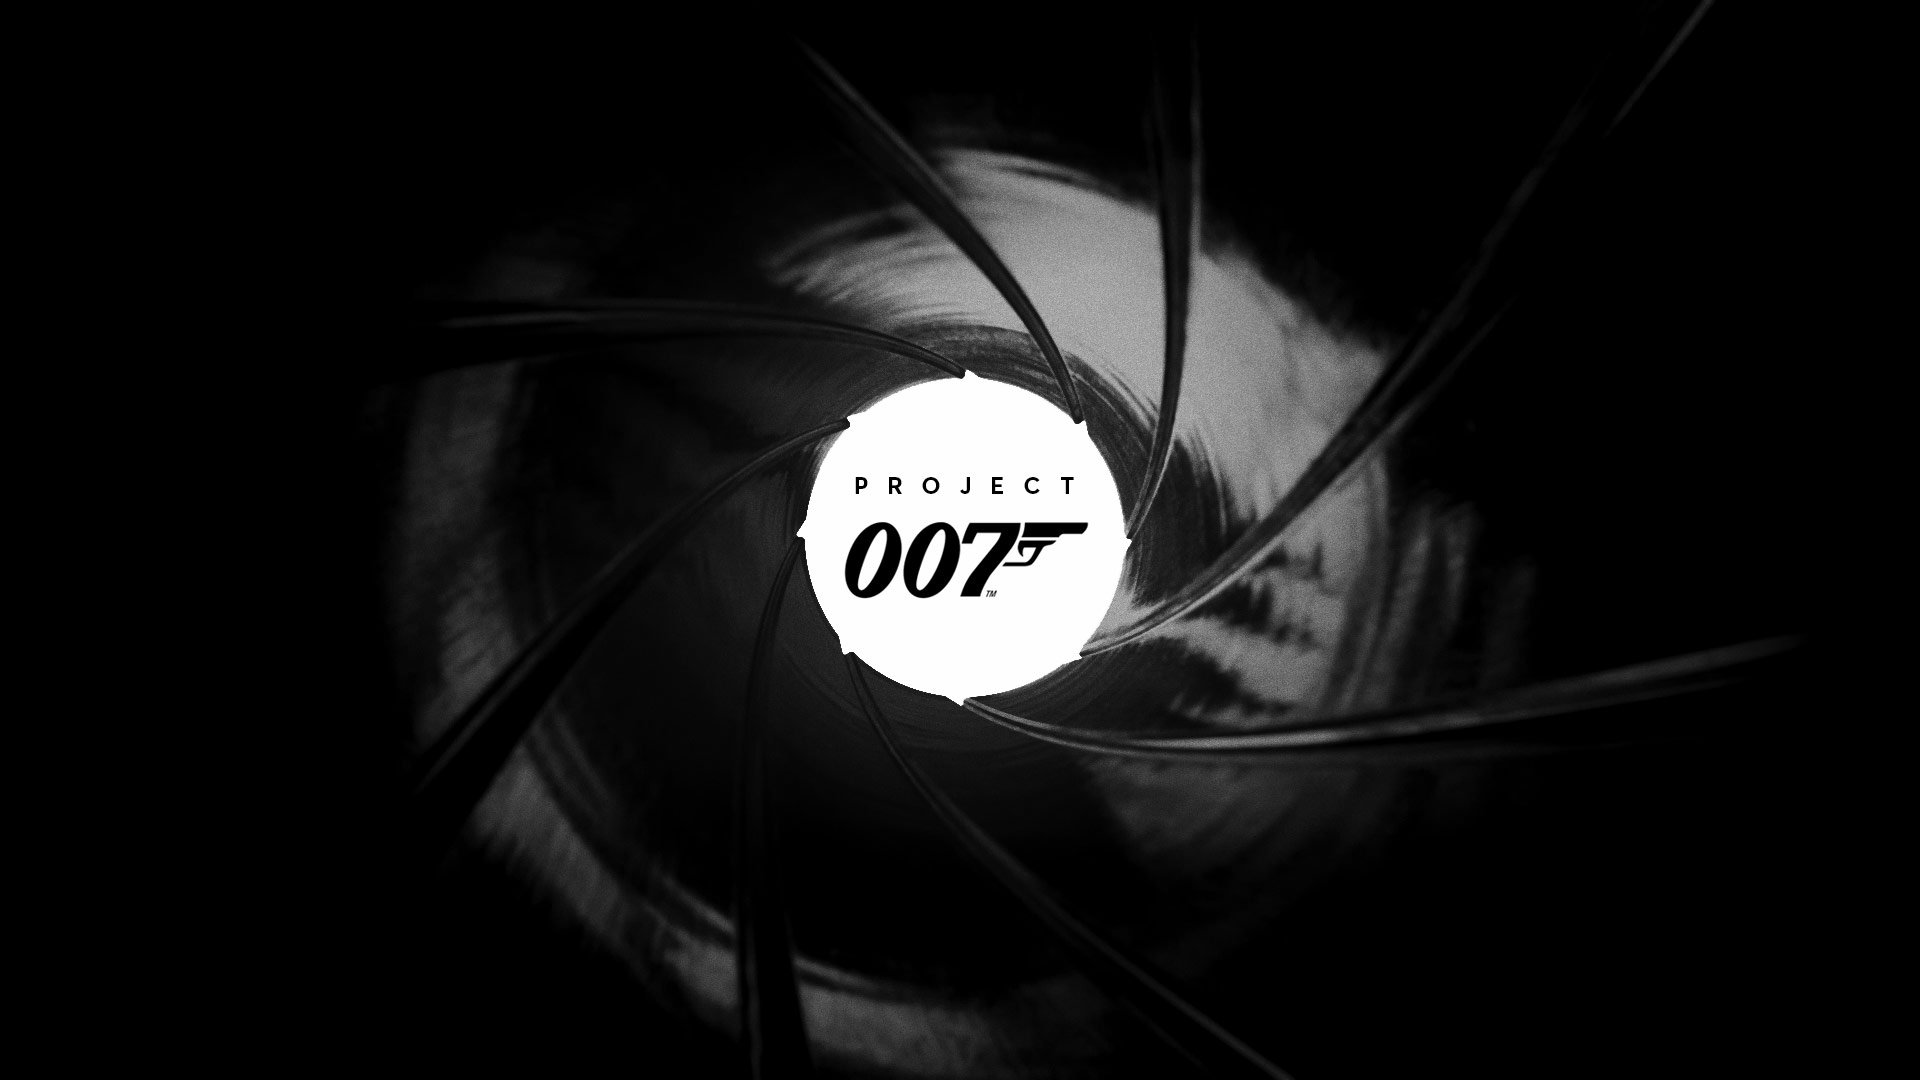 James Bond : le jeu Project 007 sera un véritable « fantasme » pour les fans